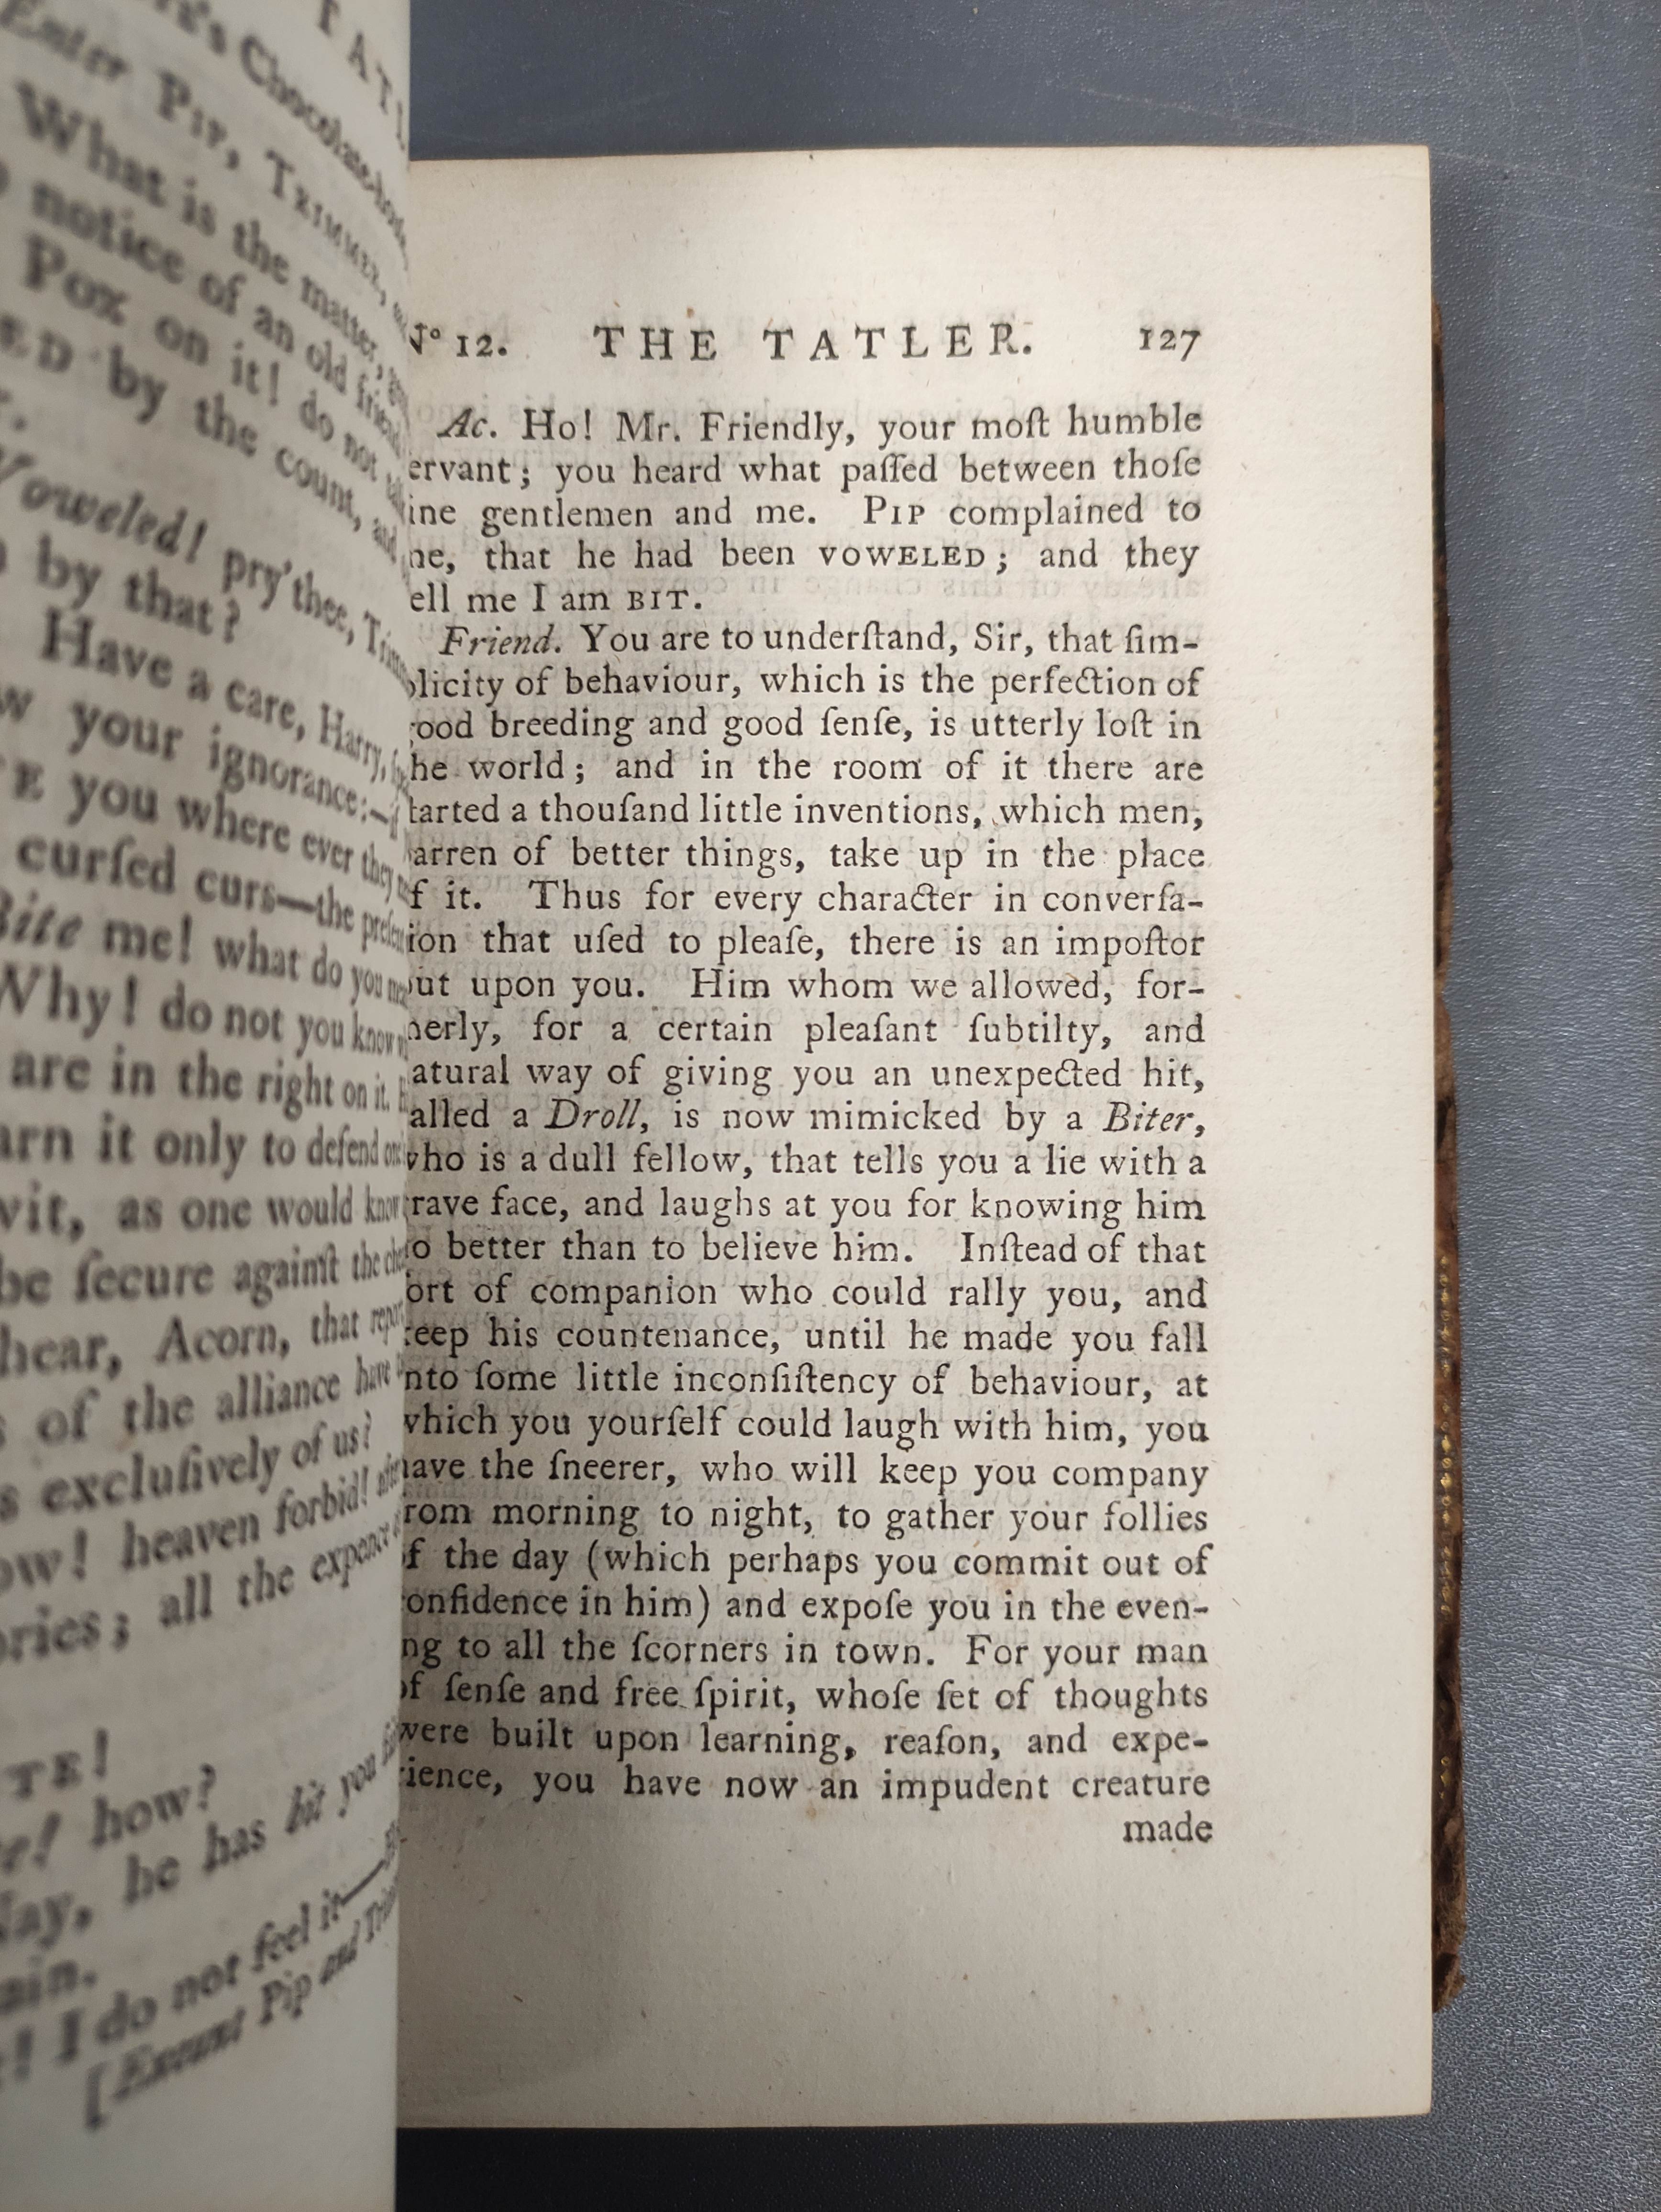 The Tatler.  4 vols. Eng. title vignettes. Rebacked old calf. 1789. - Image 5 of 6